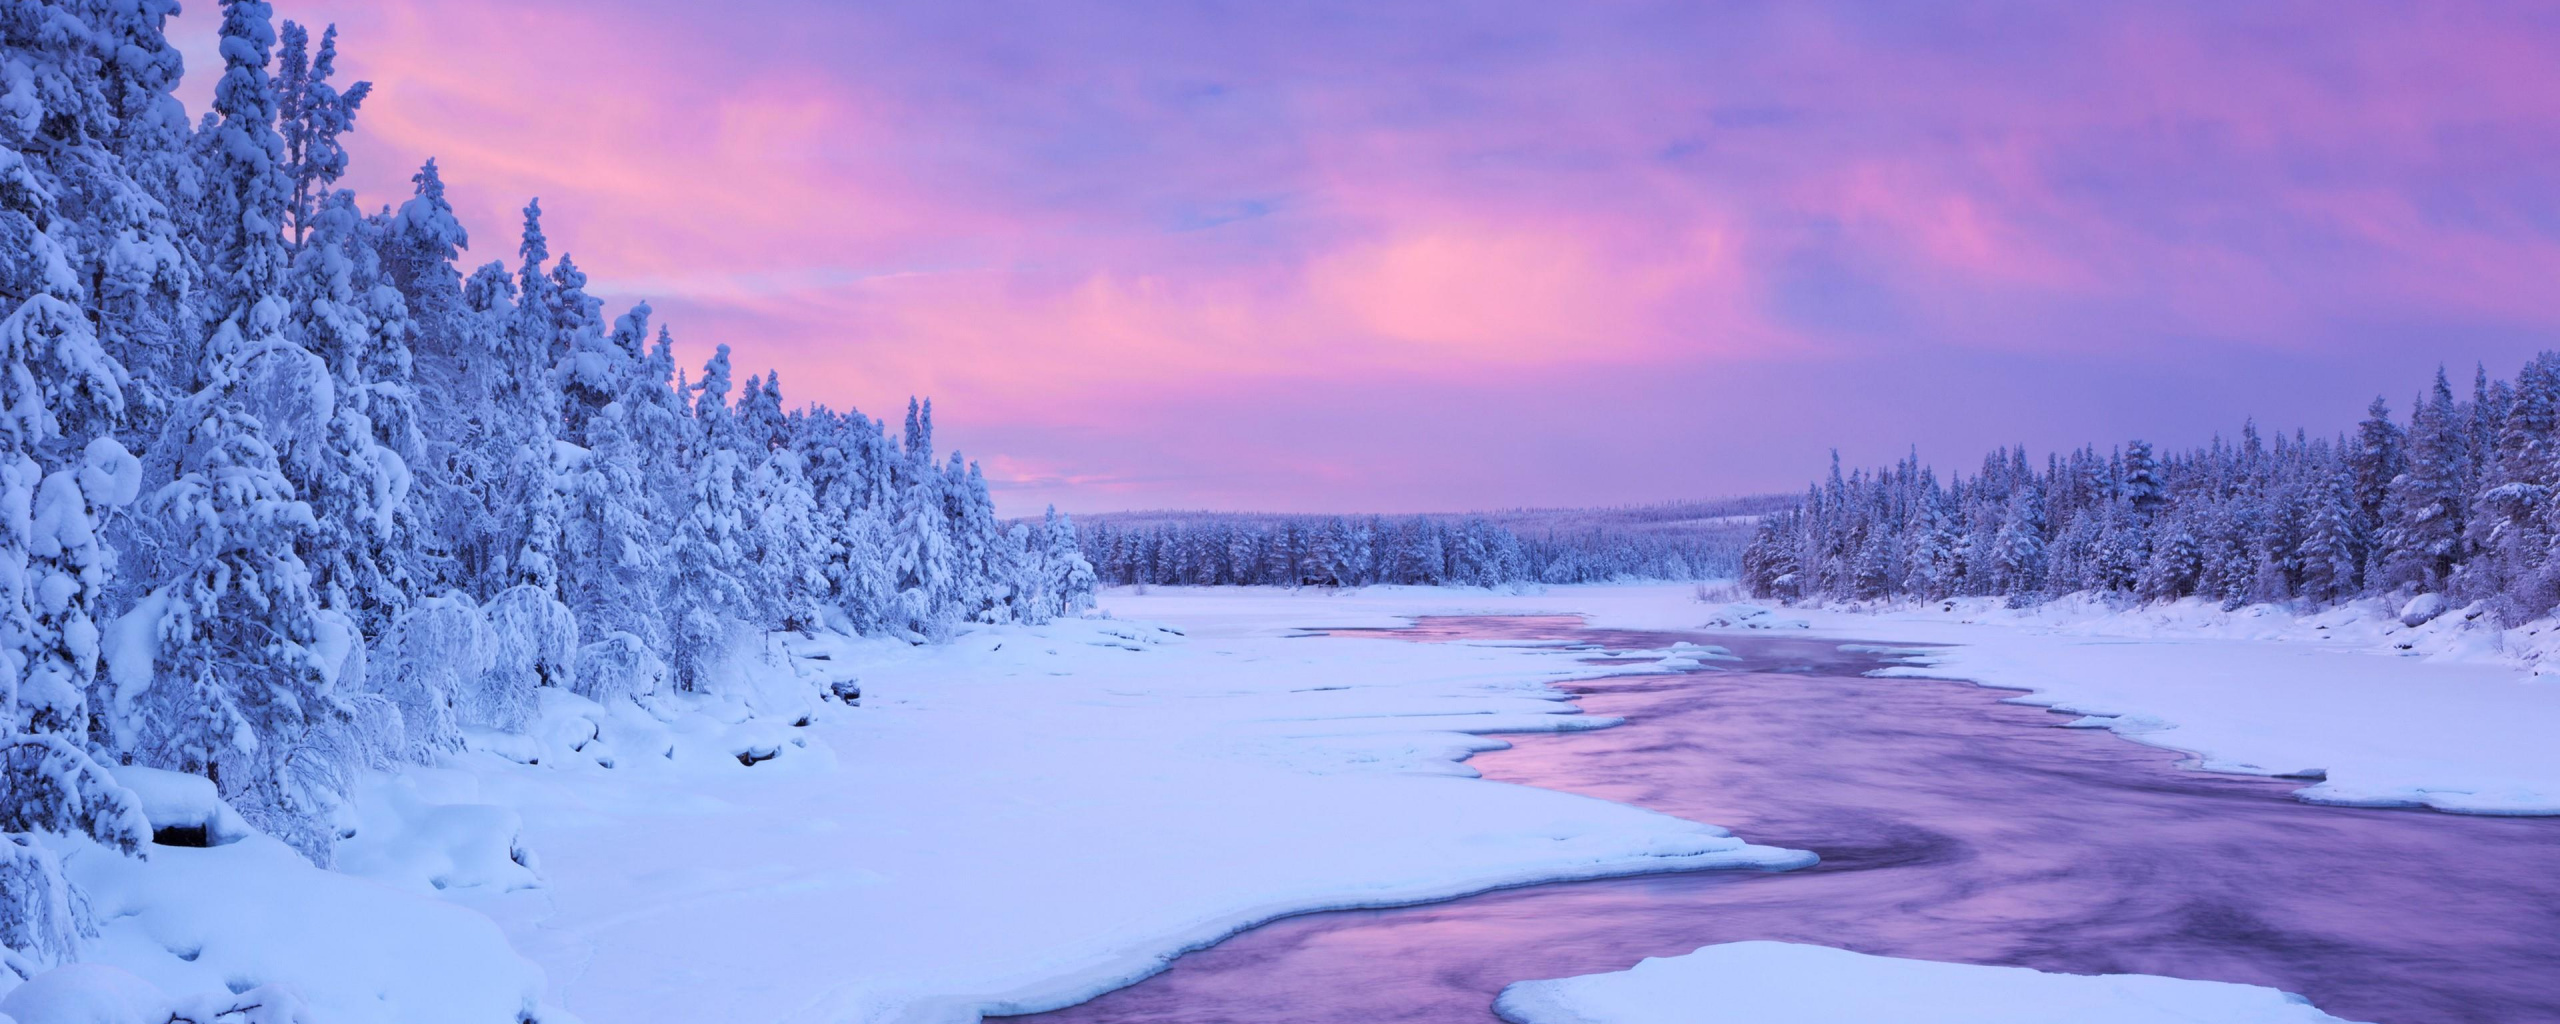 Winter Sunset - HD Wallpaper 